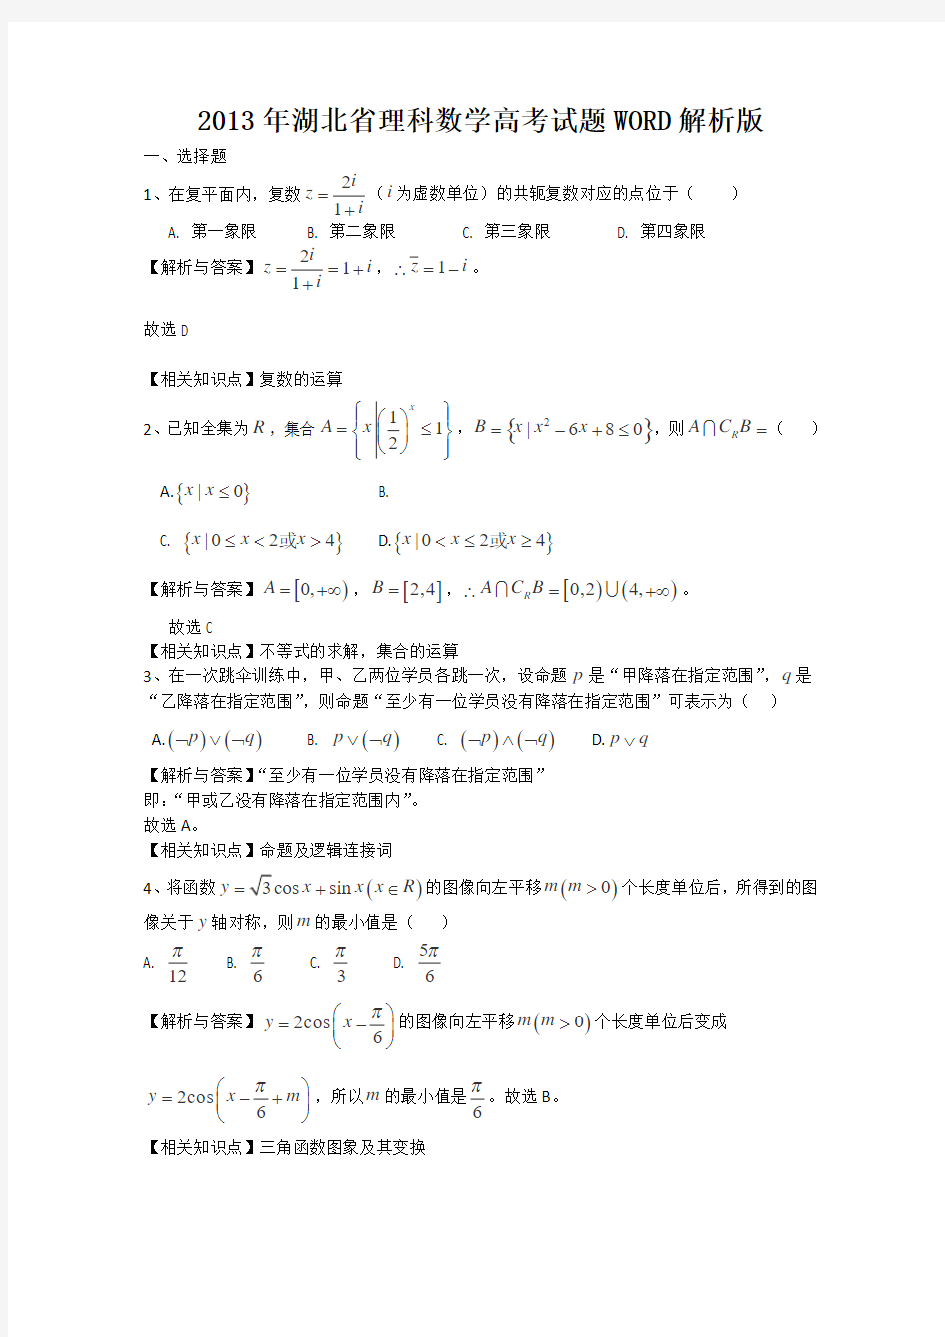 2013年高考真题——理科数学(湖北卷)解析版